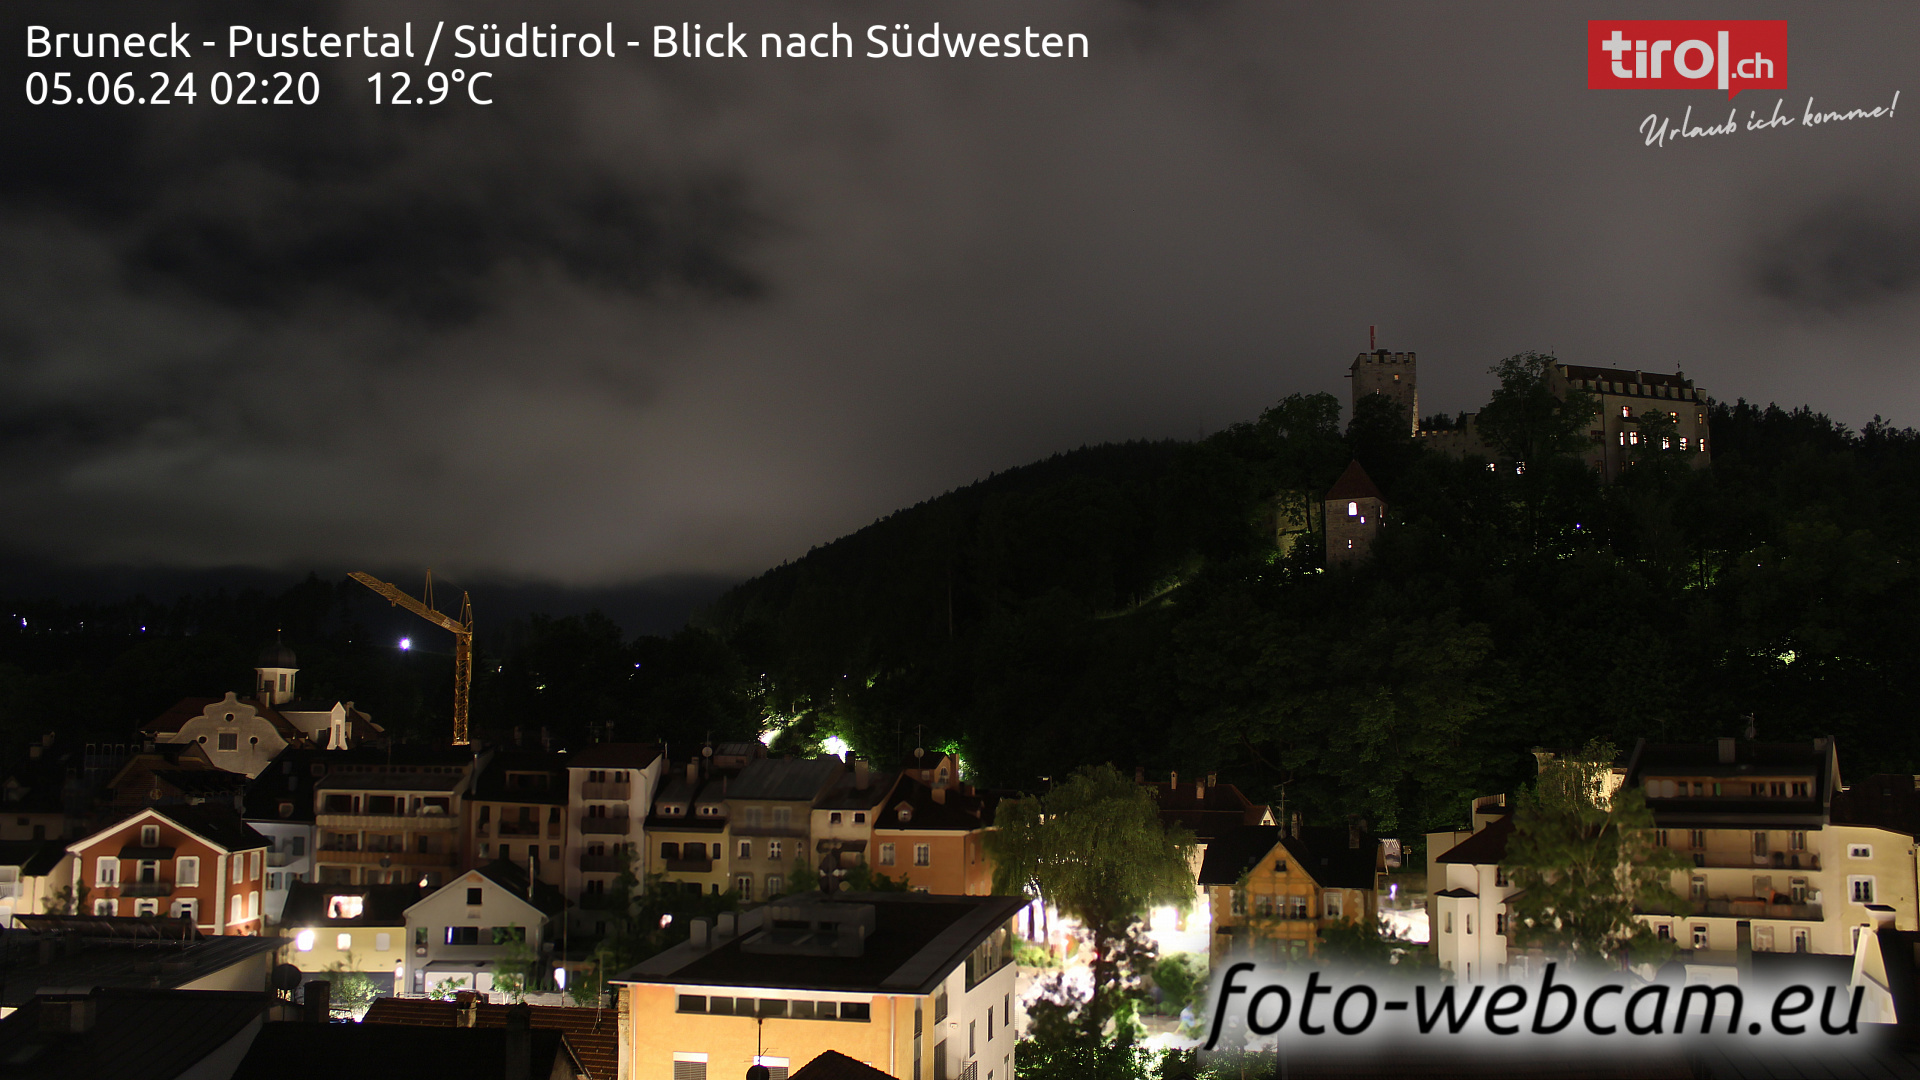 Bruneck Dom. 02:32